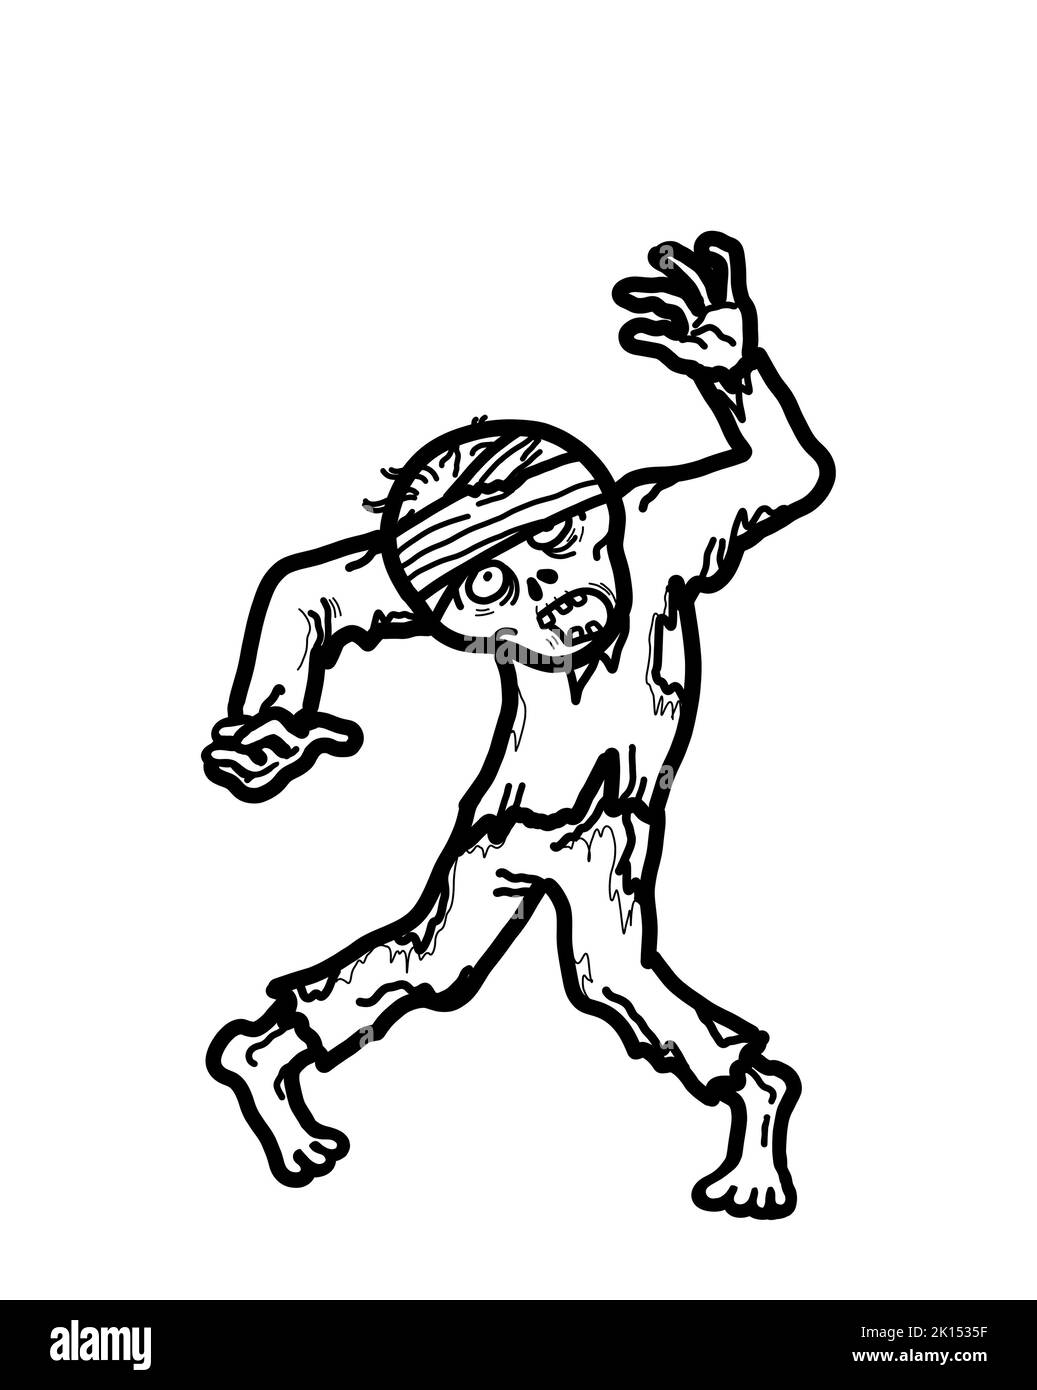 Ein Halloween Zombie Ghoul Geistermonster. Angst gespenstisch Spuk Albtraum Konzept. Handgezeichnet, isoliert auf weißem Hintergrund. Stockfoto